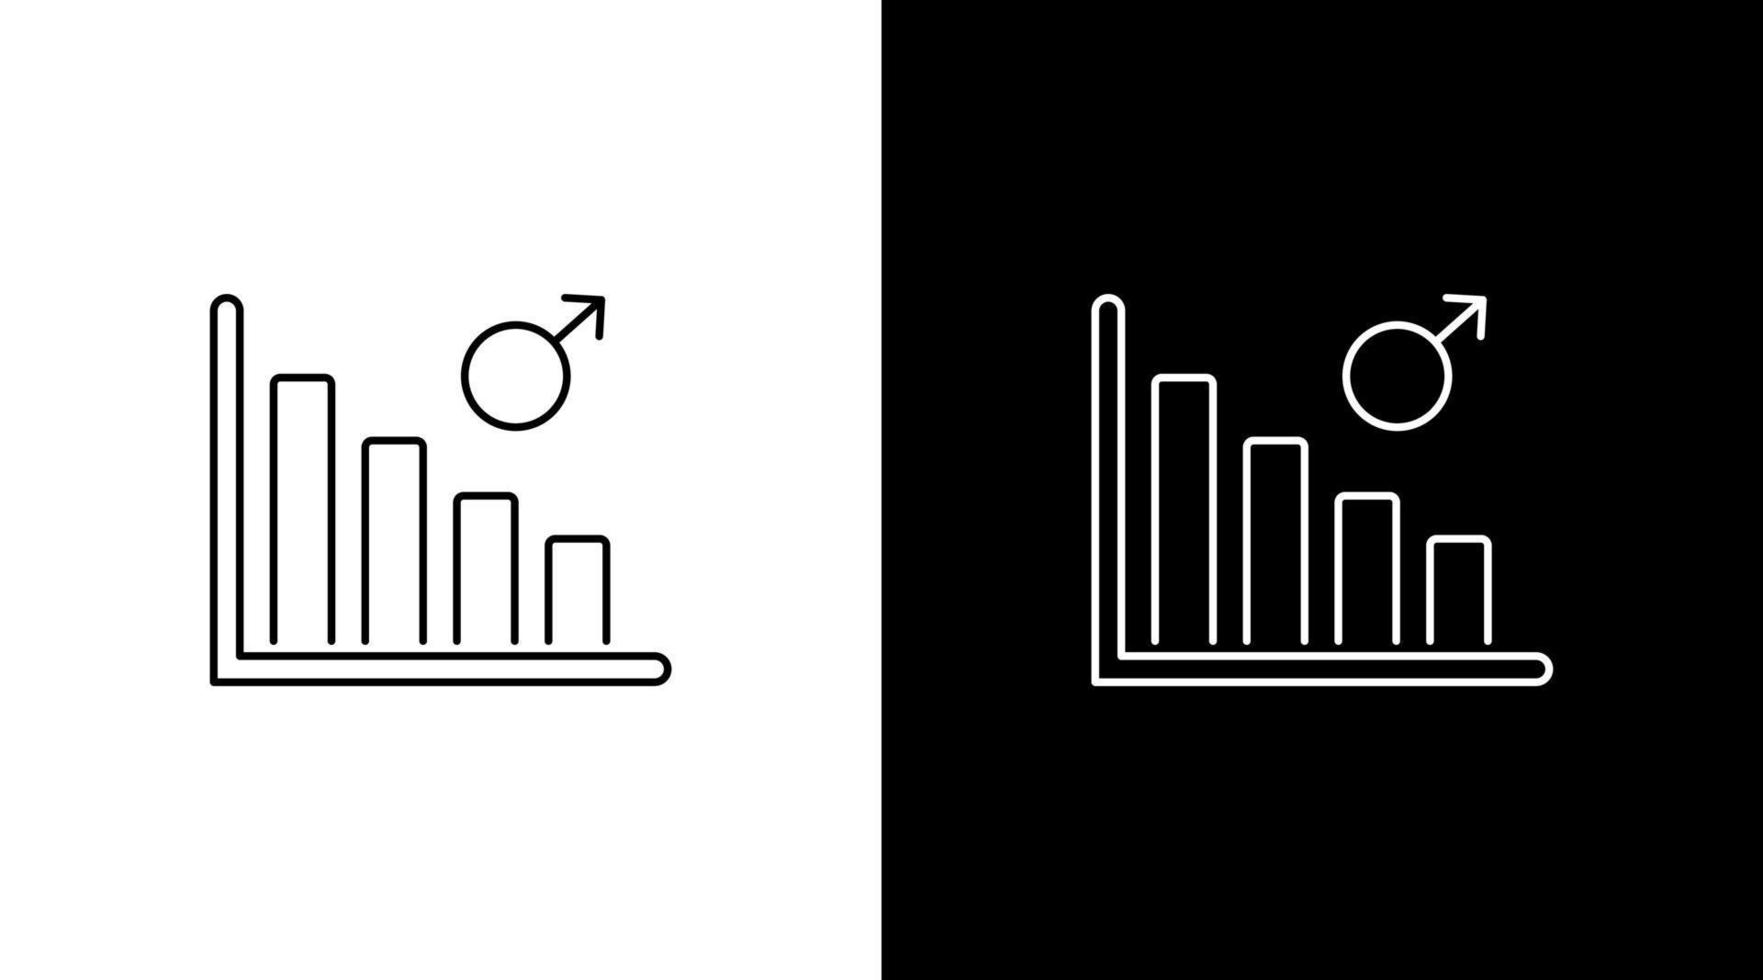 Masculin le sexe population vers le bas statistique infographie Les données une analyse contour icône conception graphique bar vecteur